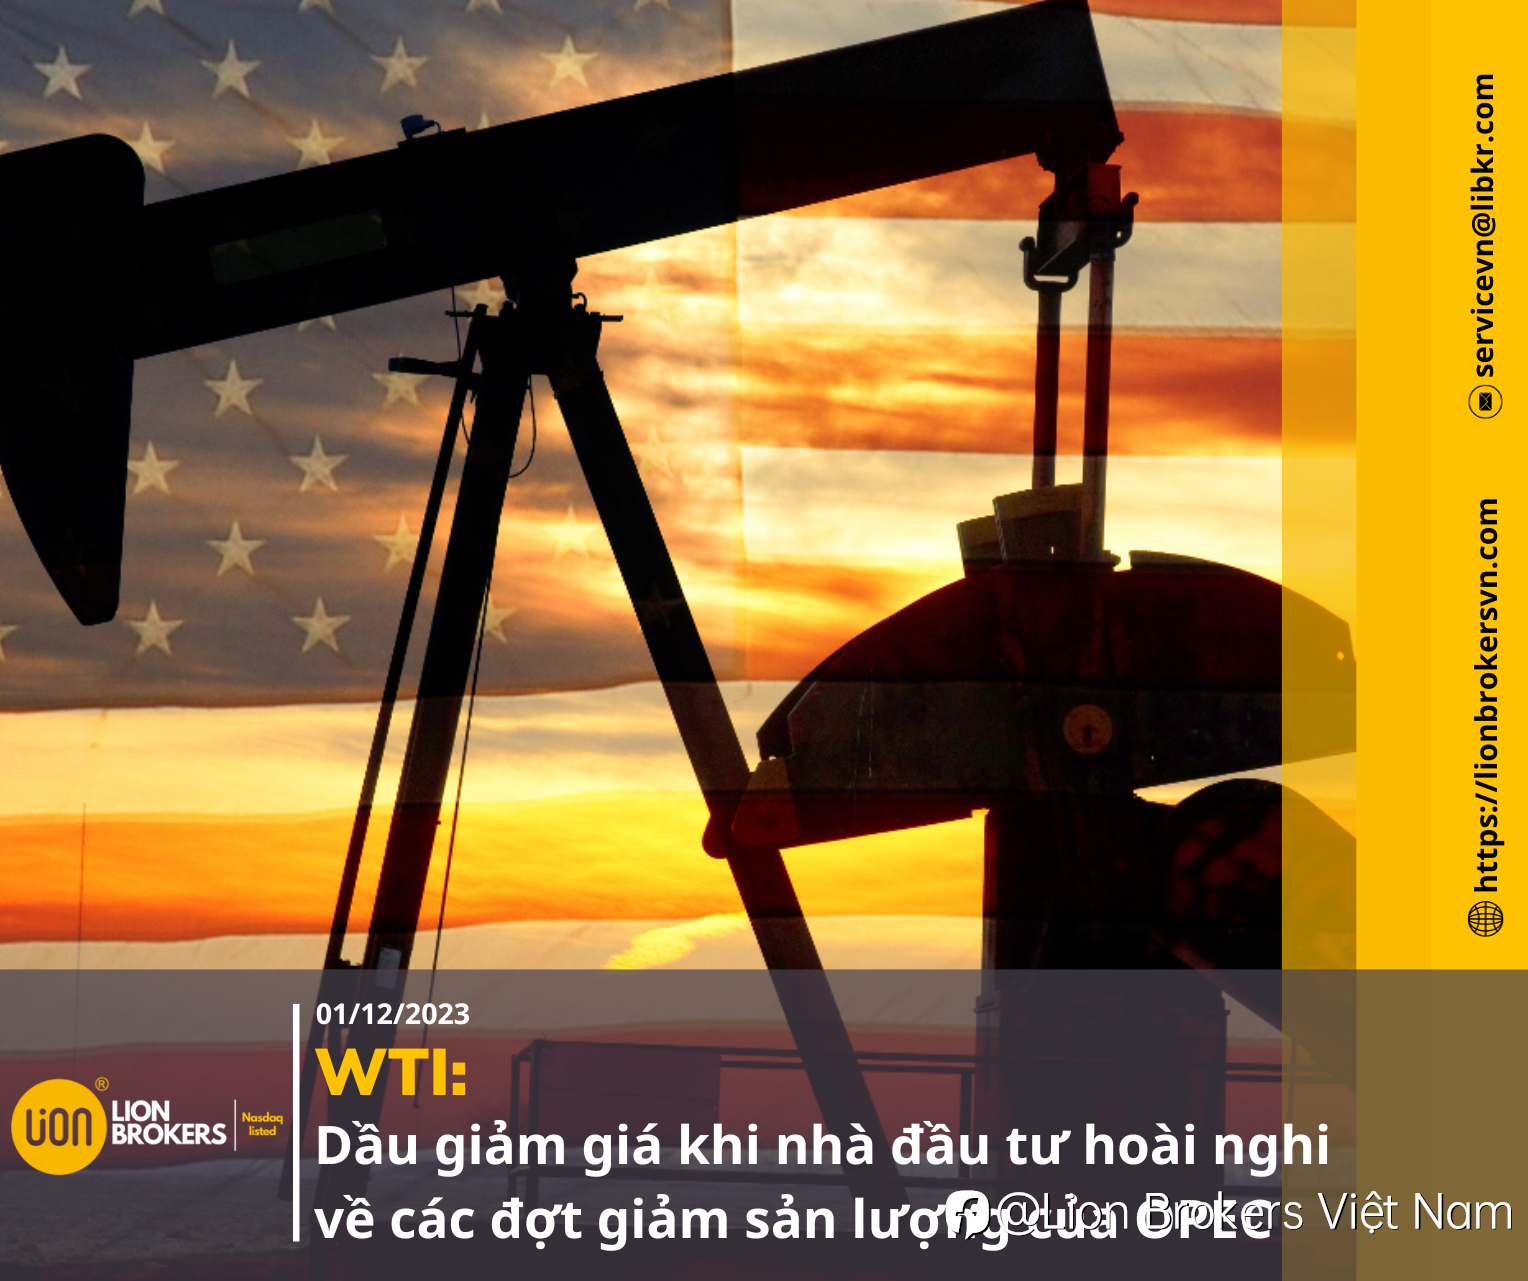 WTI: DẦU GIẢM GIÁ KHI NHÀ ĐẦU TƯ HOÀI NGHI VỀ CÁC ĐỢT GIẢM SẢN LƯỢNG CỦA OPEC